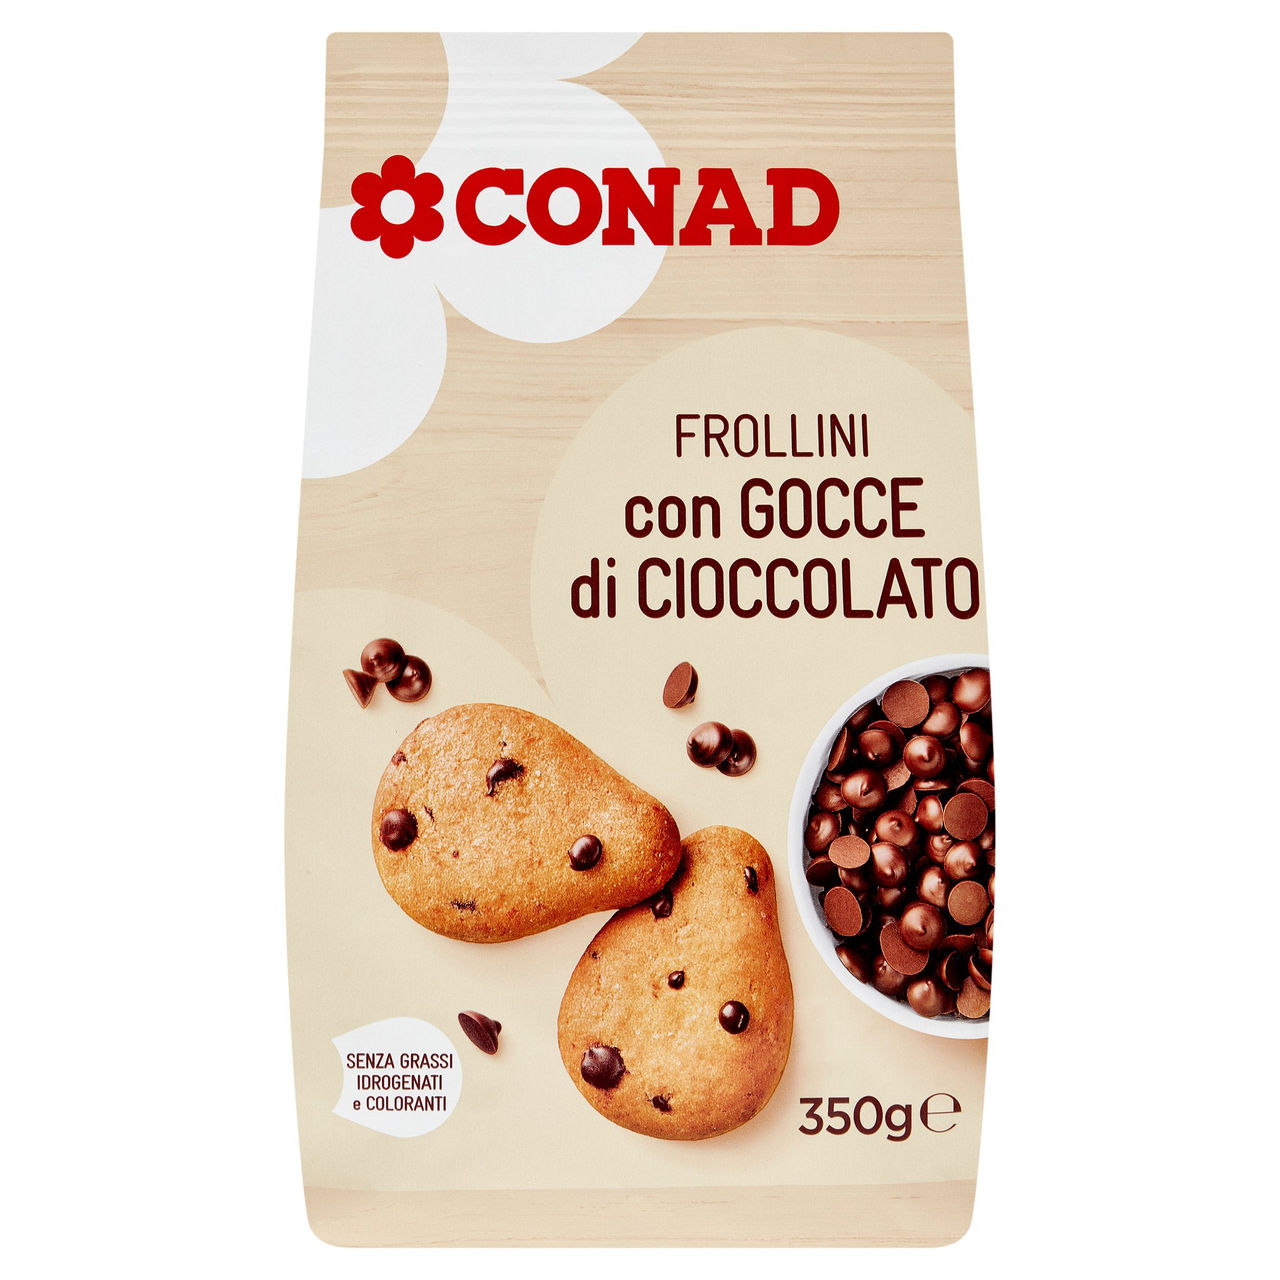 Frollini con Gocce di Cioccolato 350g Conad online